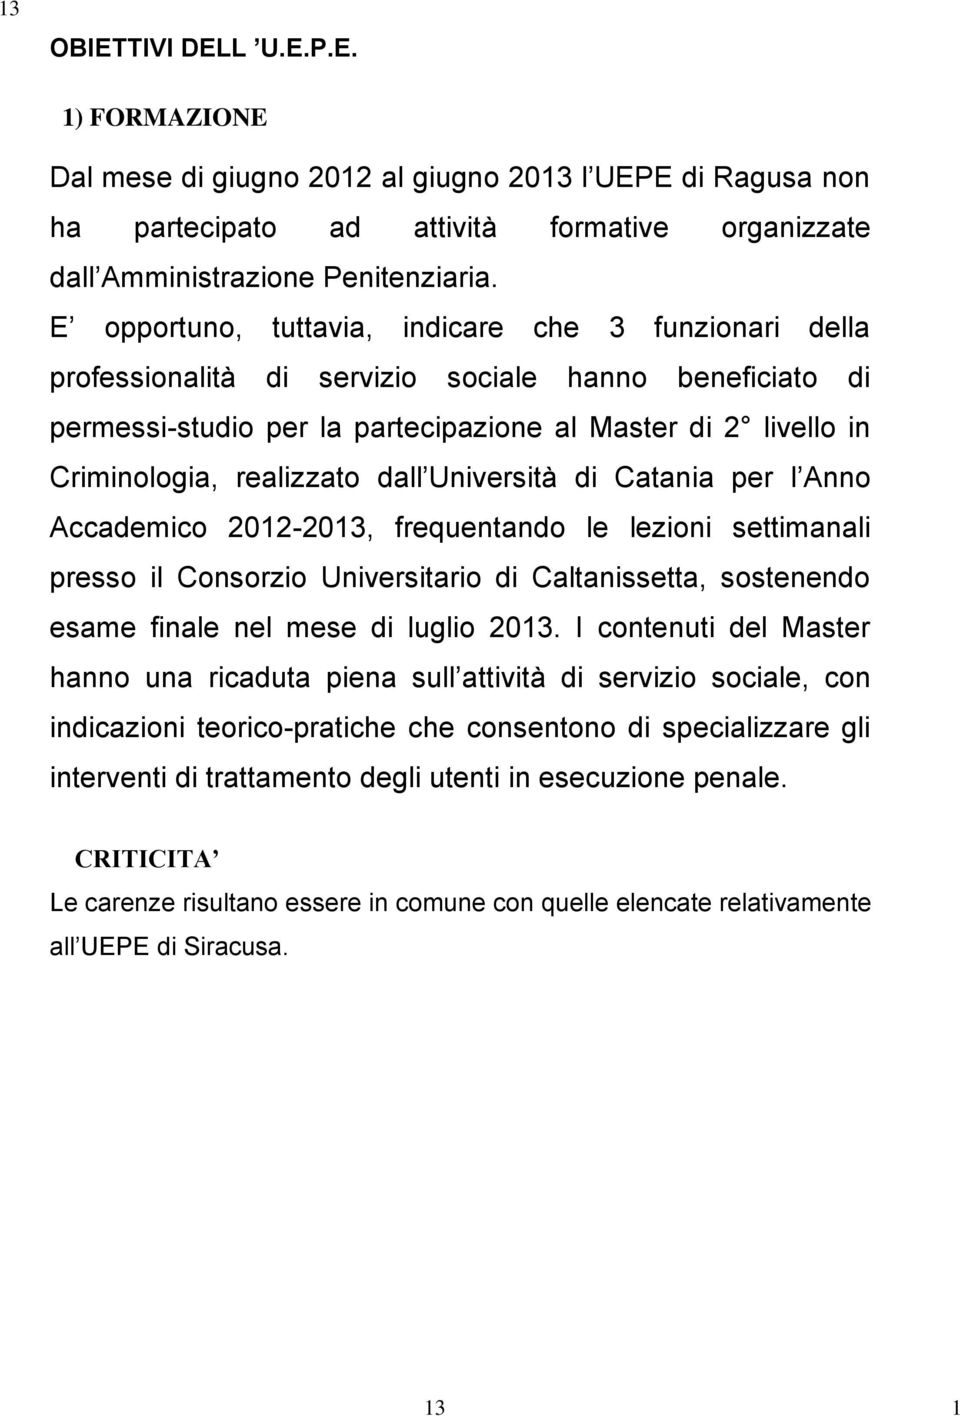 realizzato dall Università di Catania per l Anno Accademico 2012-2013, frequentando le lezioni settimanali presso il Consorzio Universitario di Caltanissetta, sostenendo esame finale nel mese di